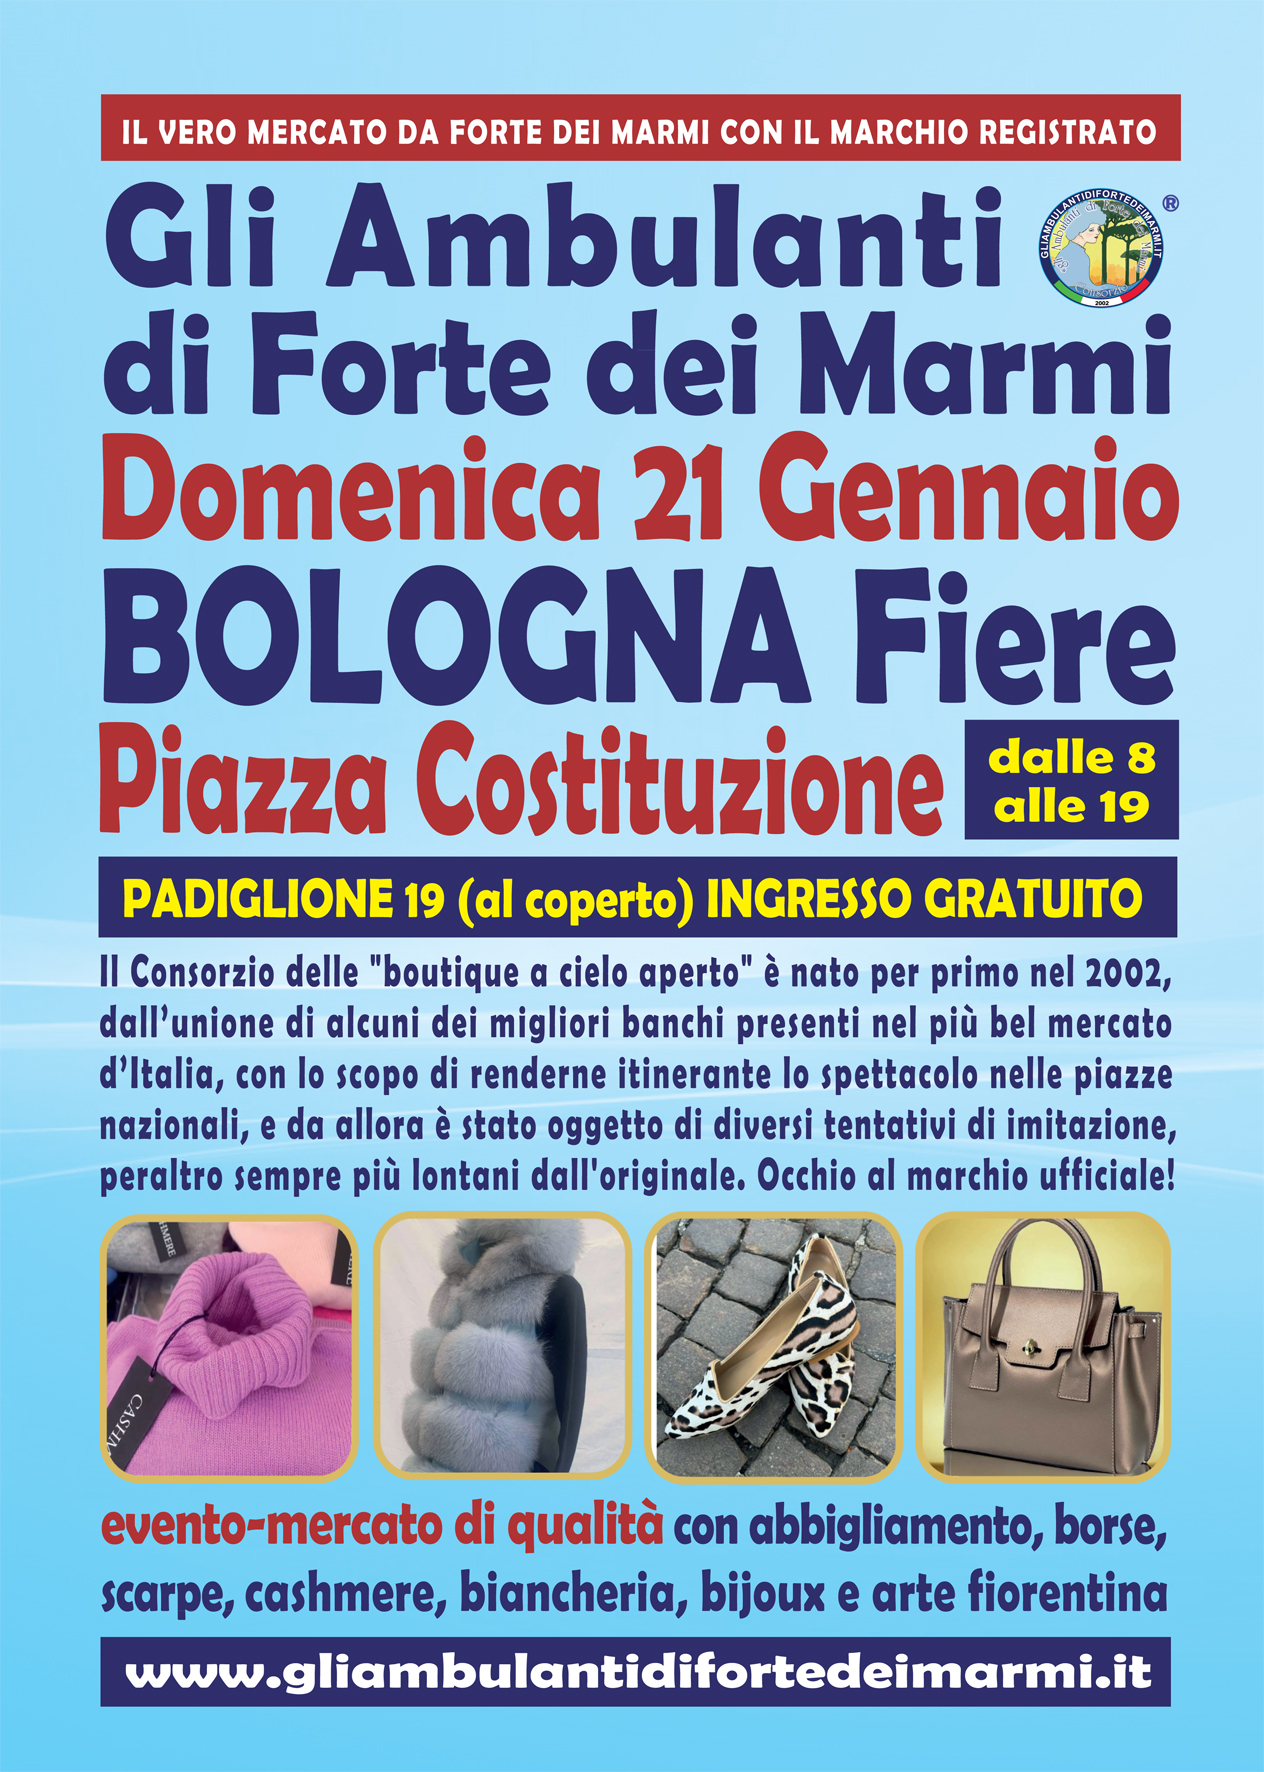 "Gli Ambulanti di Forte dei Marmi®” a Bologna Fiere domenica 21 gennaio